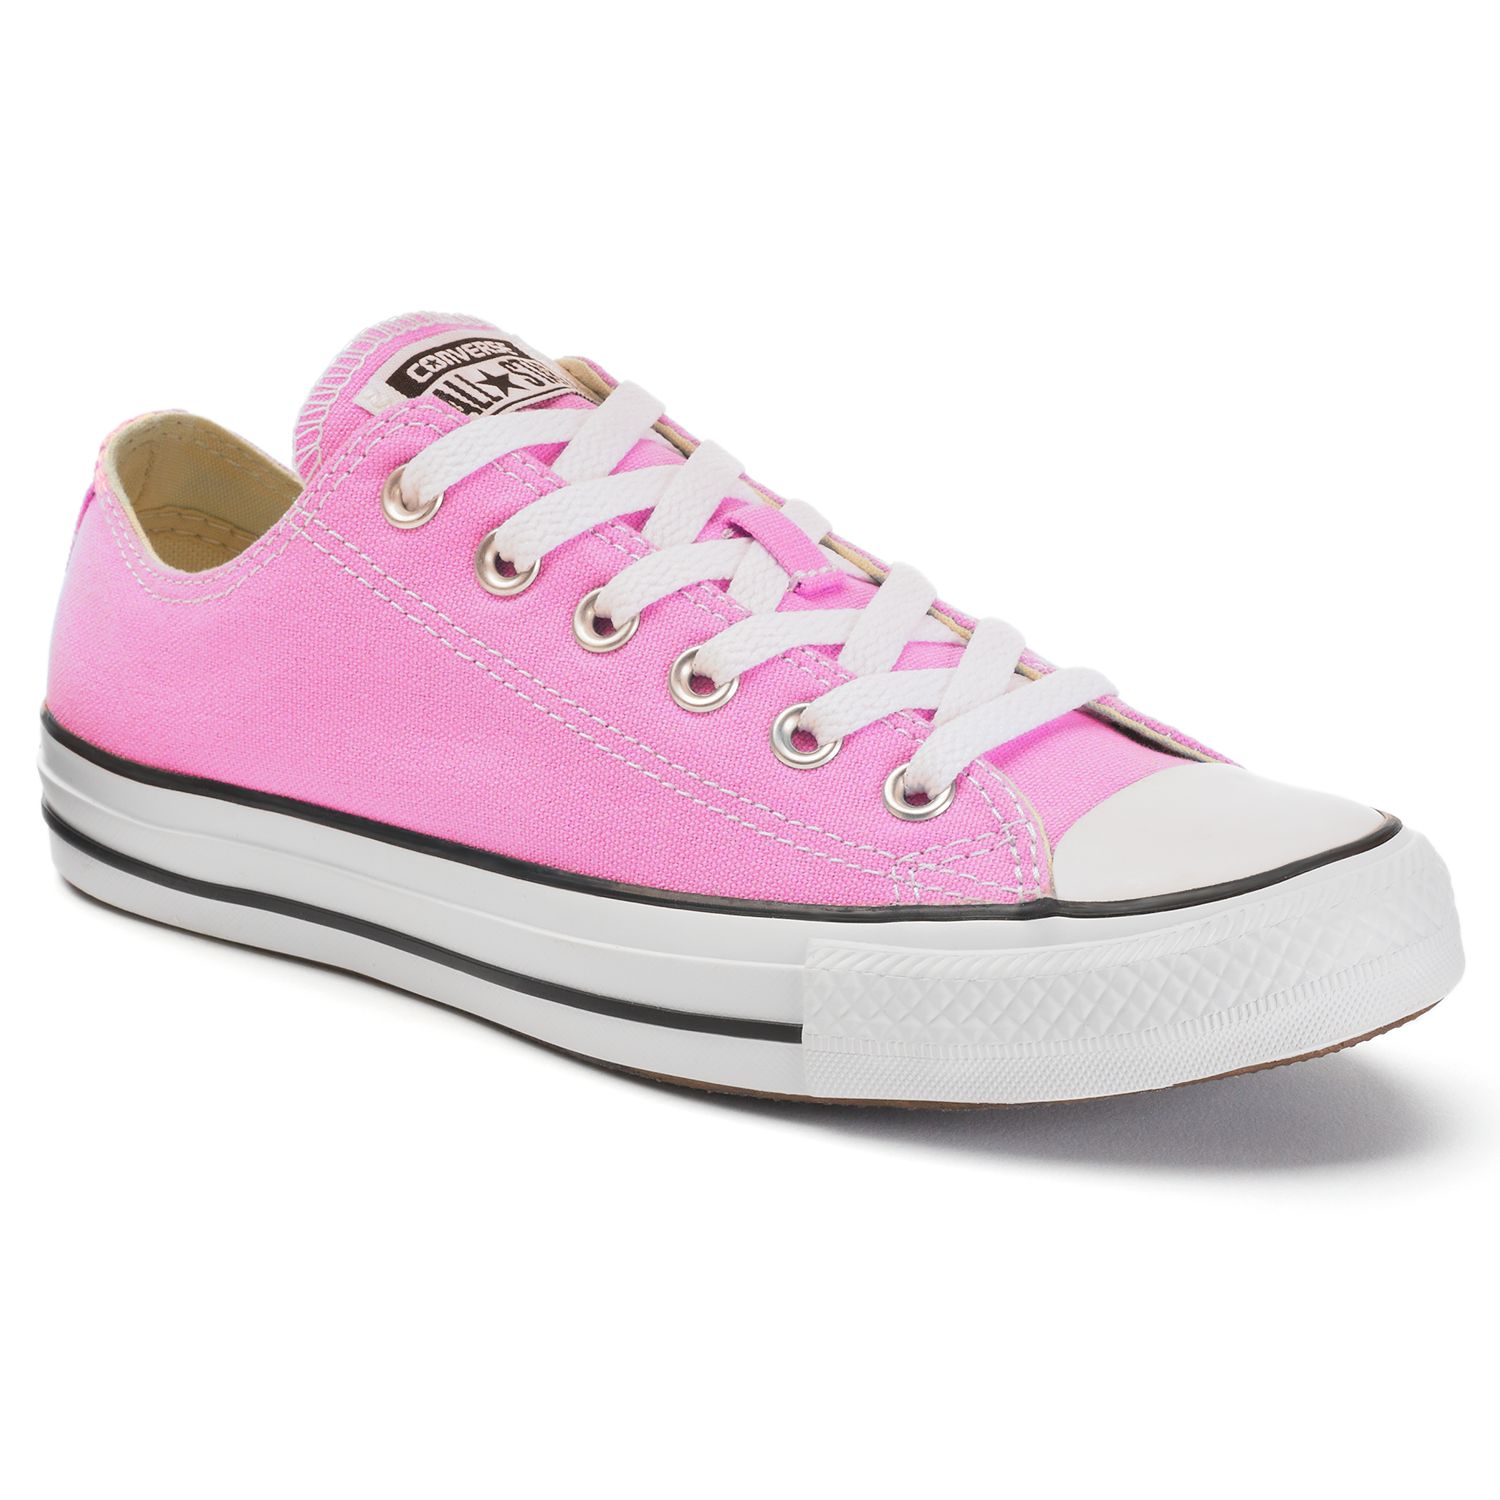 ladies pink tennis shoes